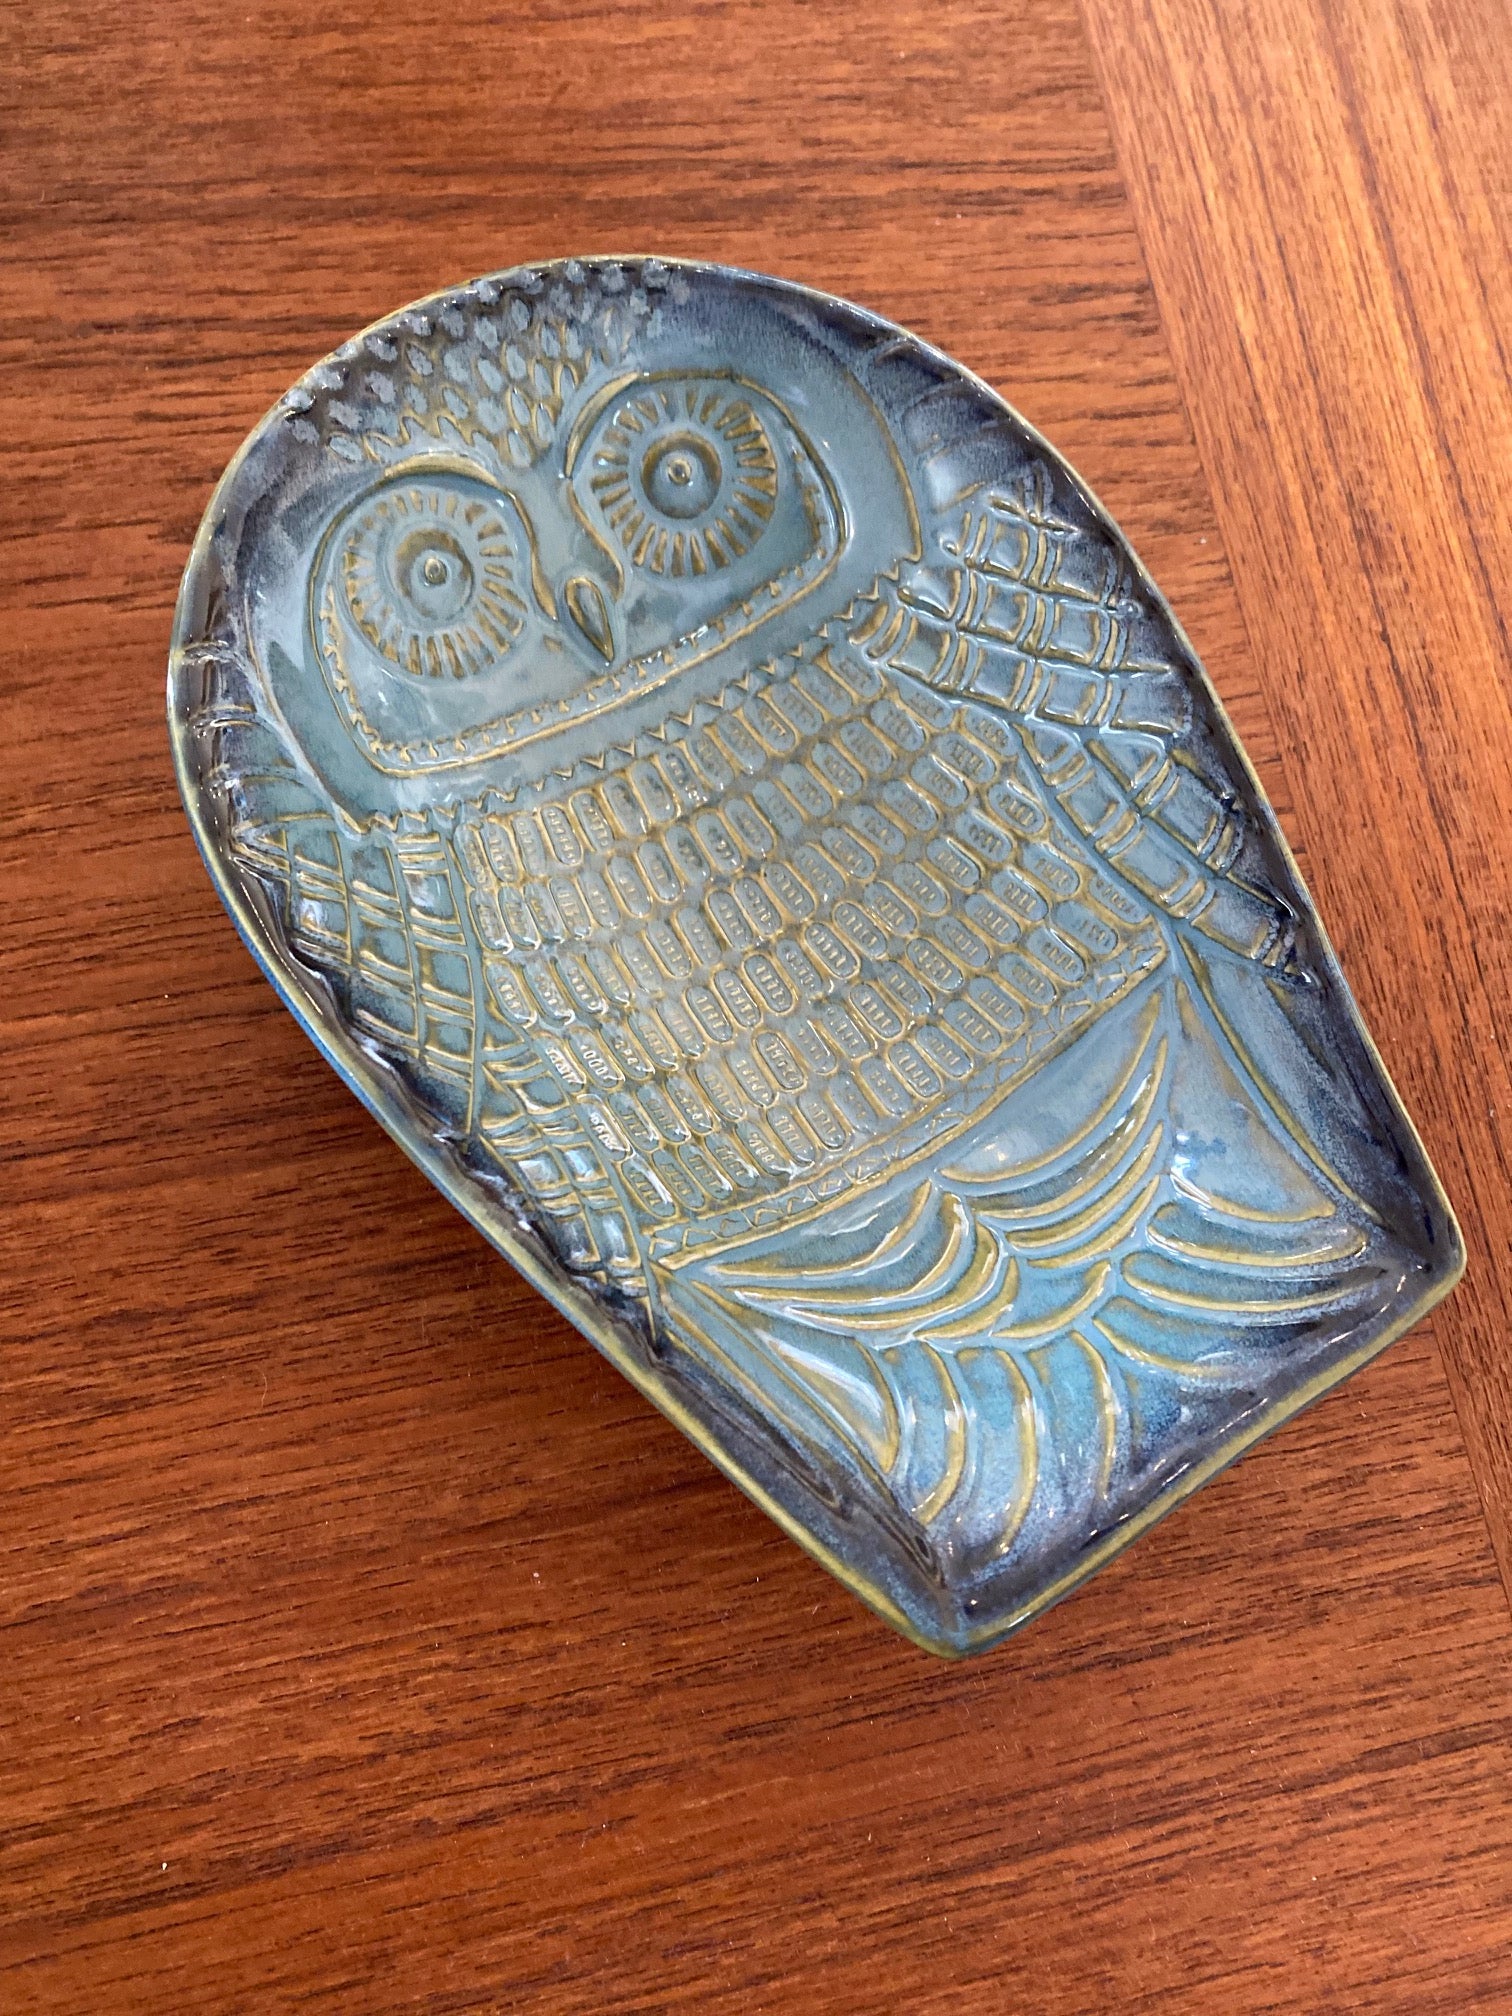 Lovely Owl Ceramic Dish